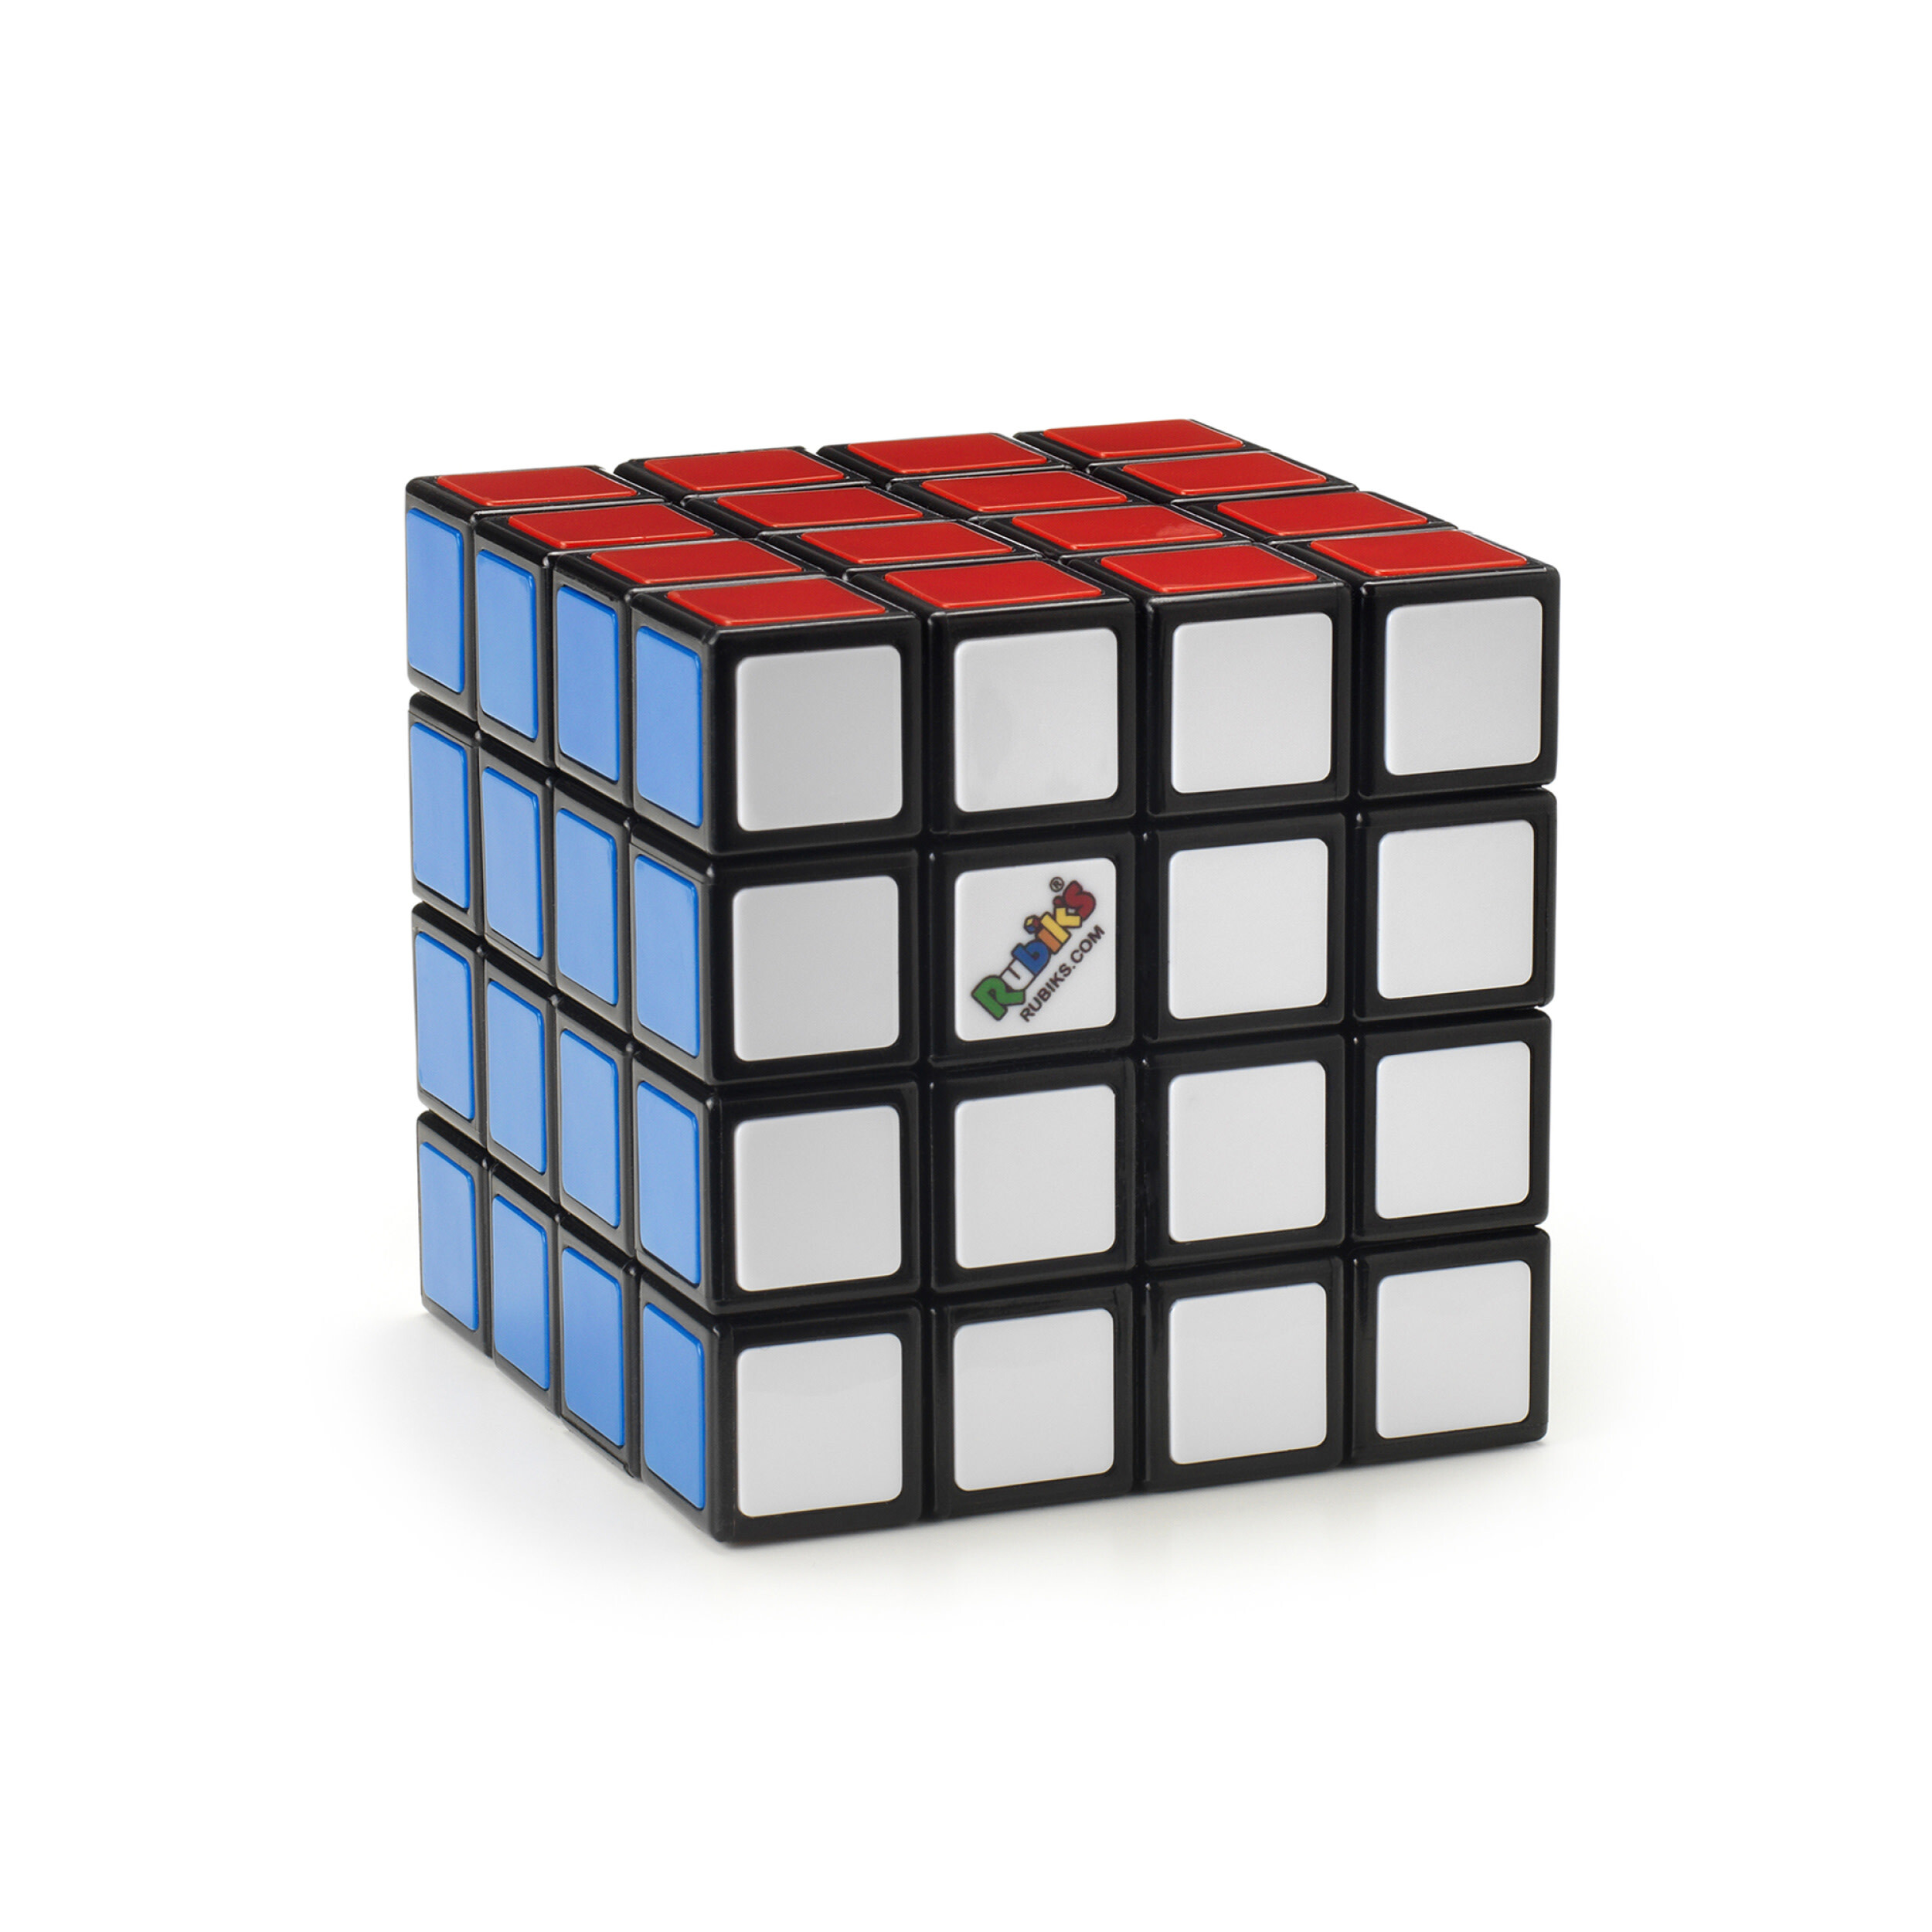 Rubik's Rubik’s Rubik's Cube - 4x4-kubus puzzel waarbij je kleuren moet combineren grotere versie van de klassieker